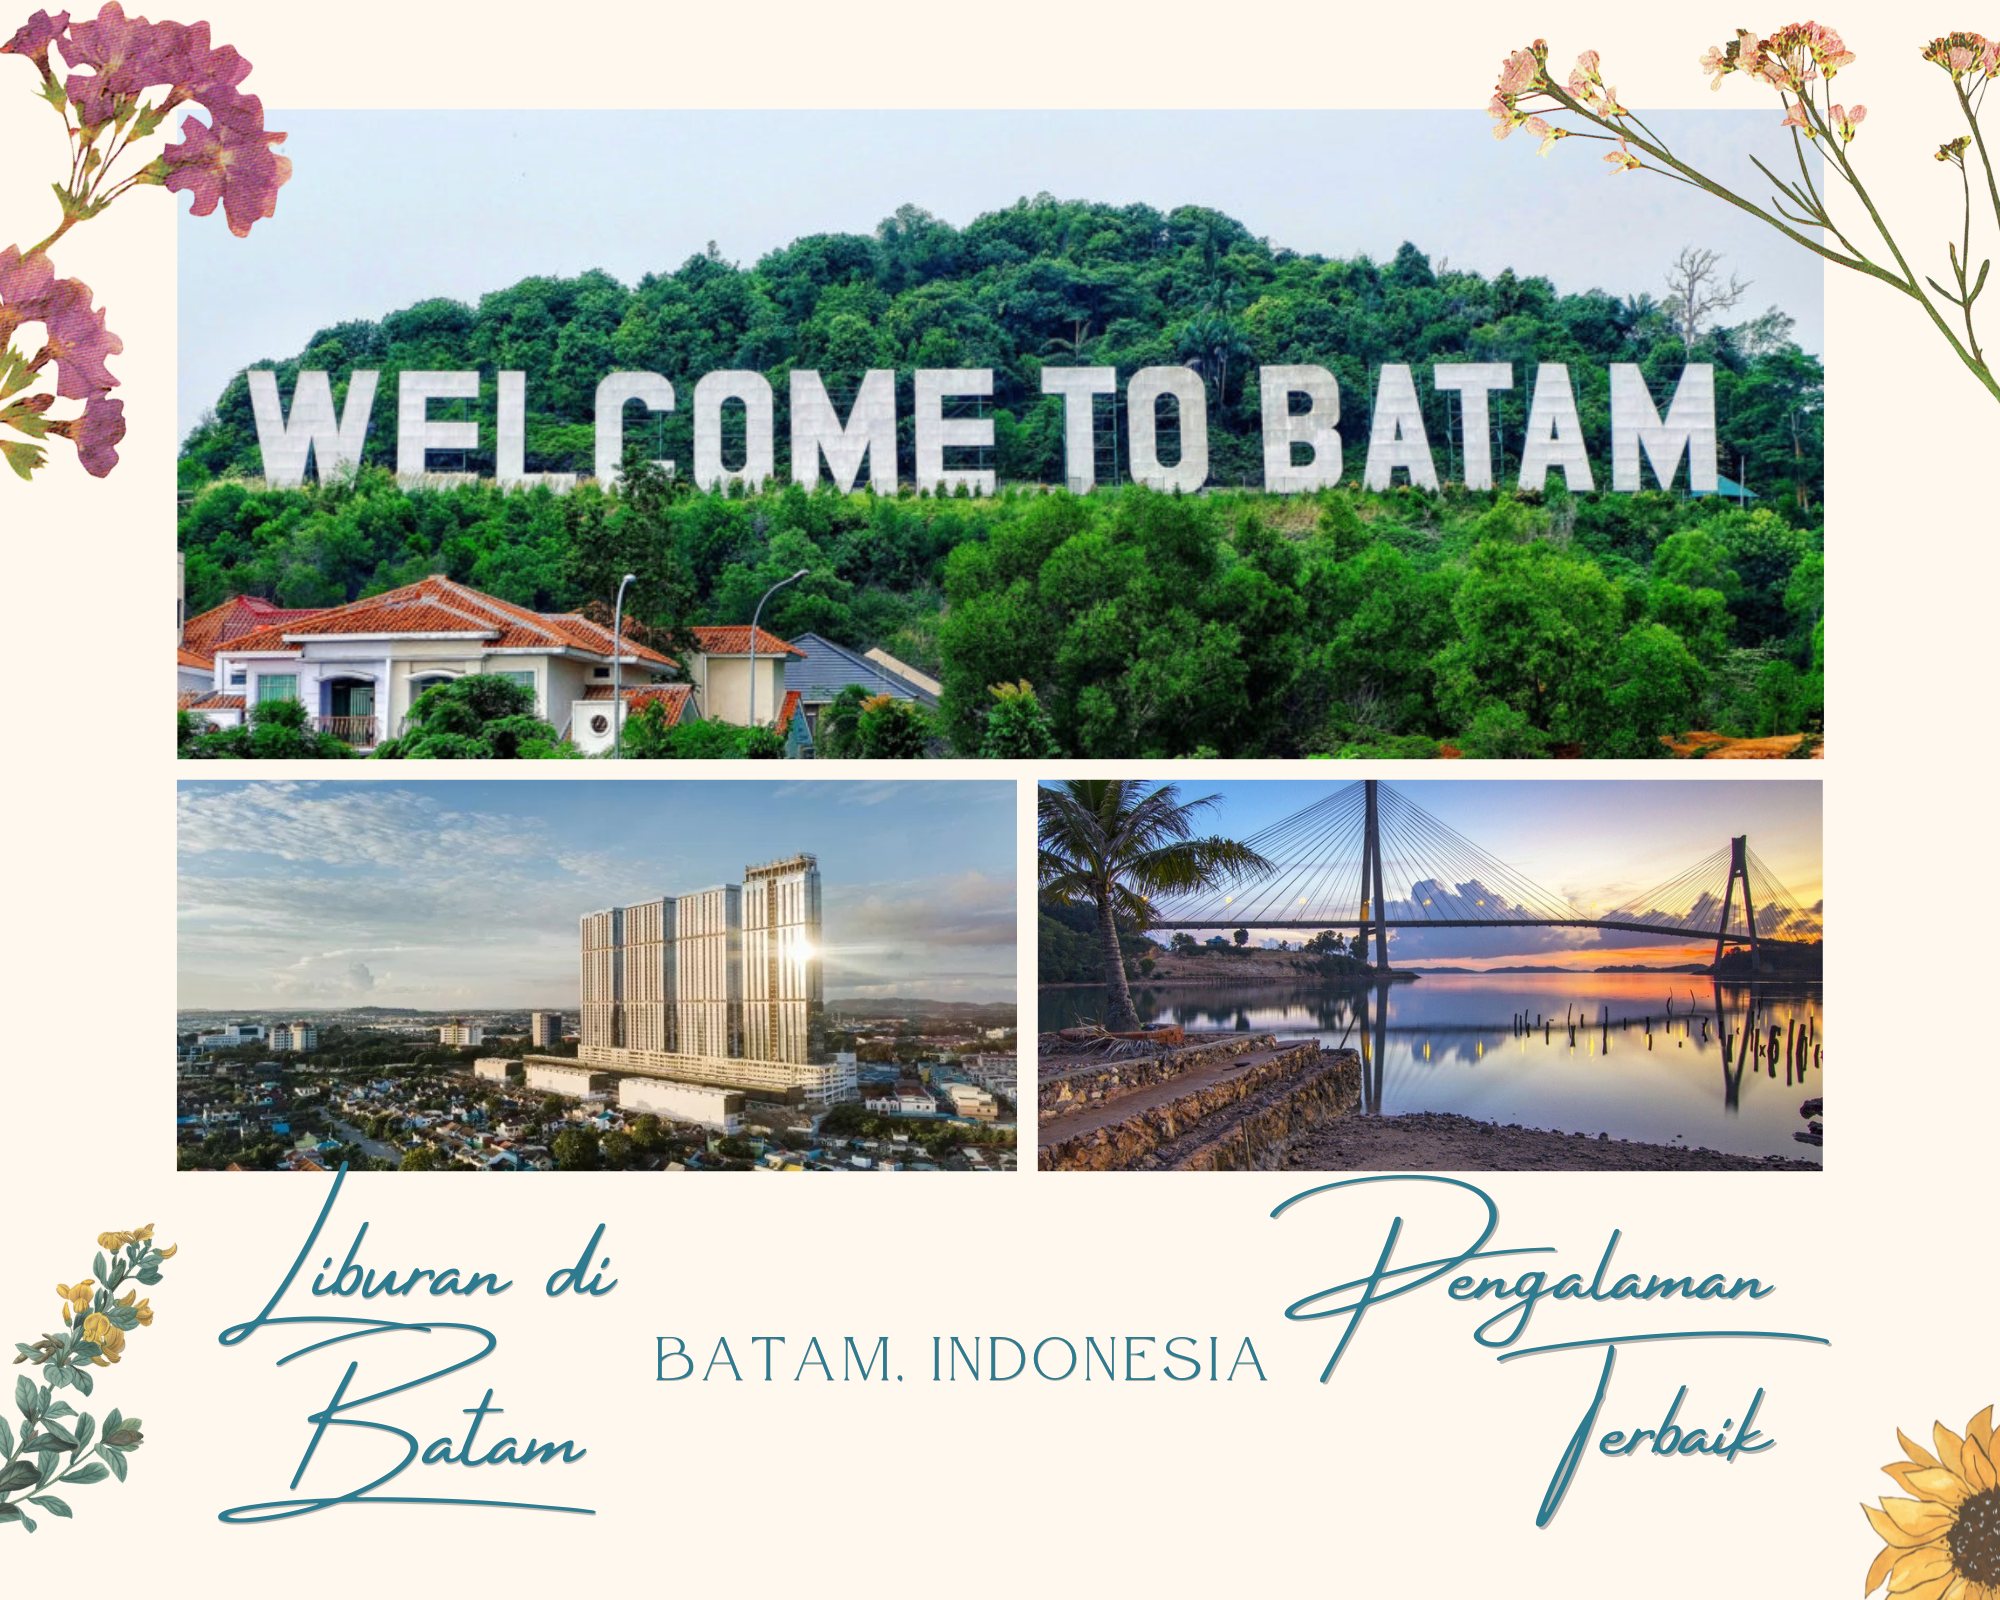 Rental Mobil Batam, Tour and Travel Batam